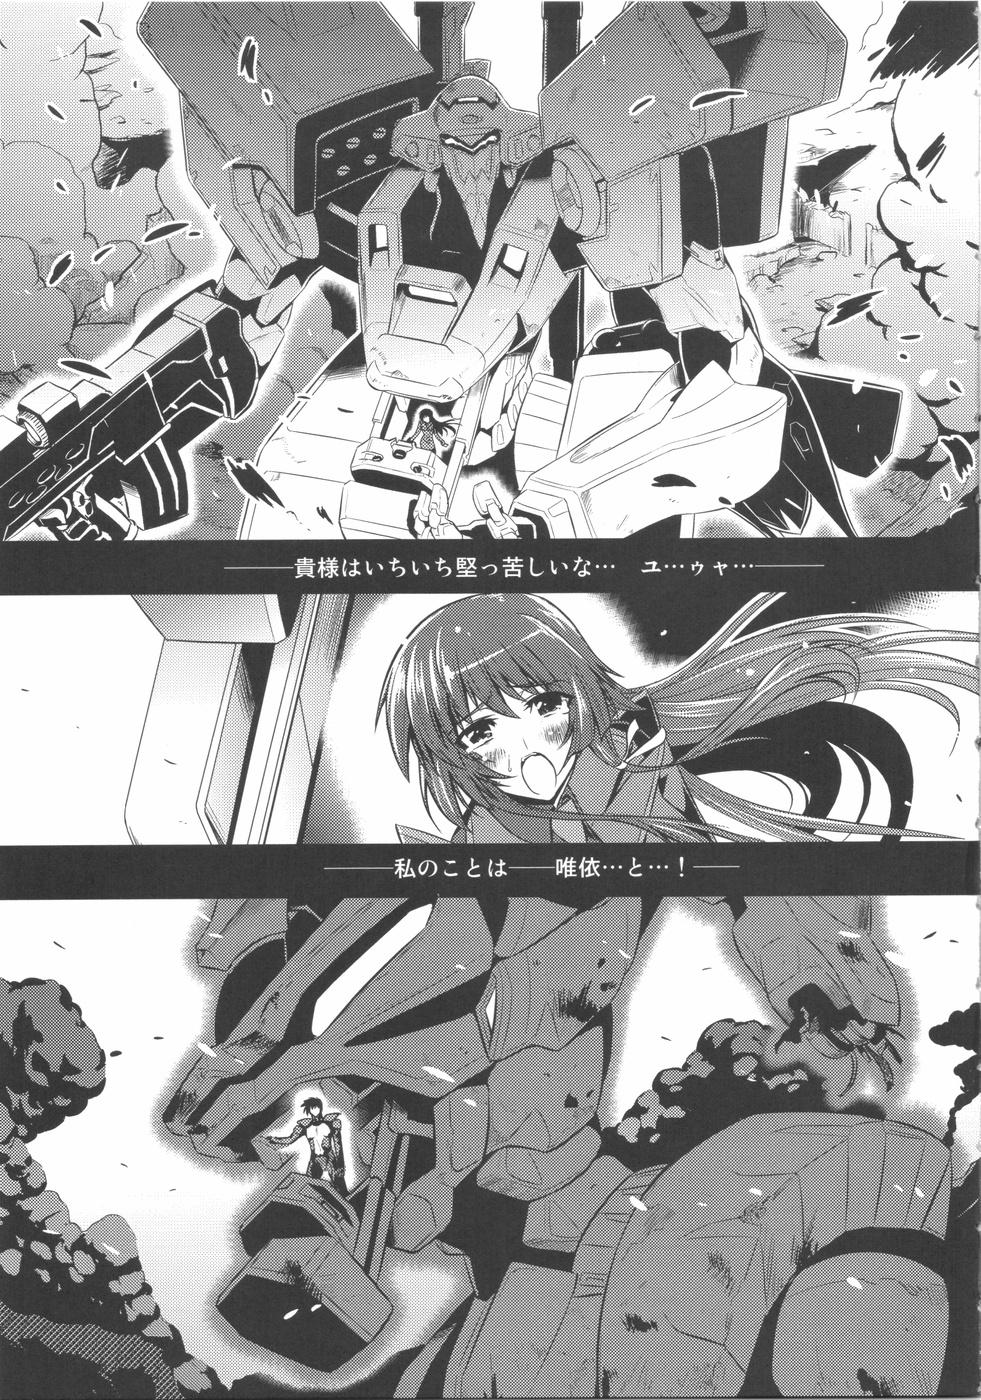 Morrita Ore ga TE de Kimi wa Alter - Muv-luv Muv-luv alternative total eclipse Super Hot Porn - Page 11